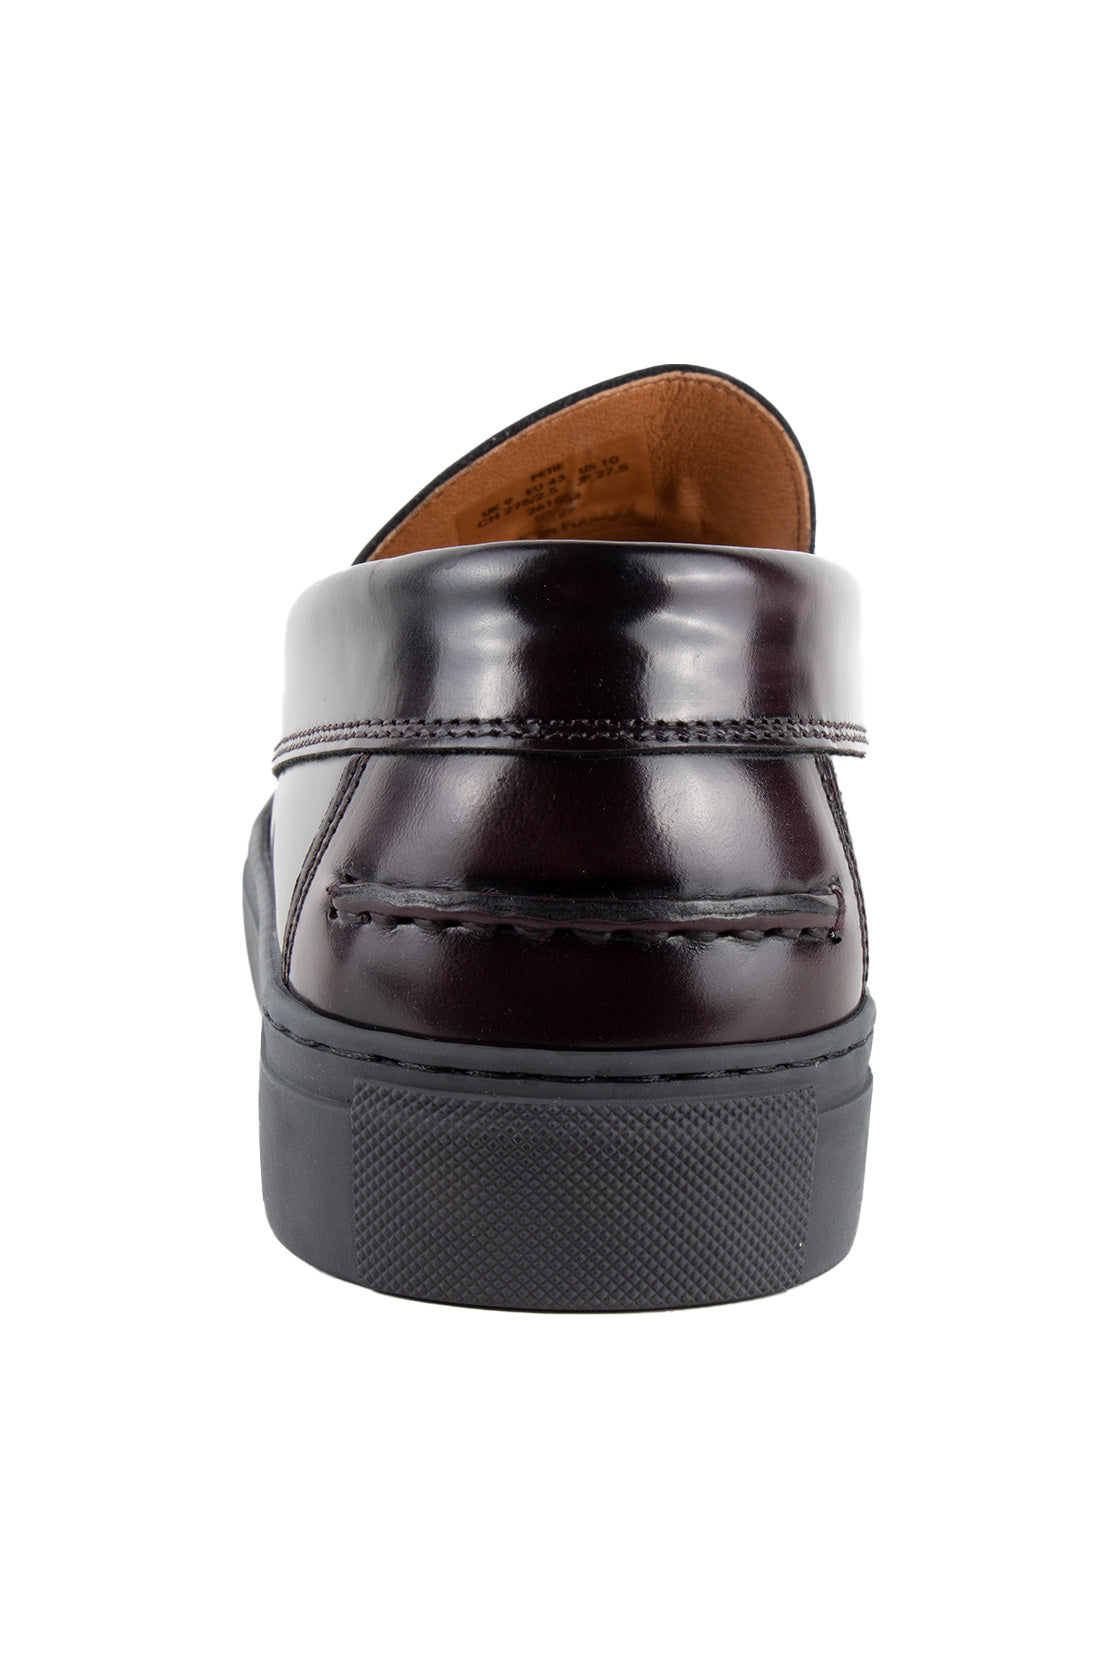 Ted Baker Petie Hybrid Leather Tassel Loafer Oxblood